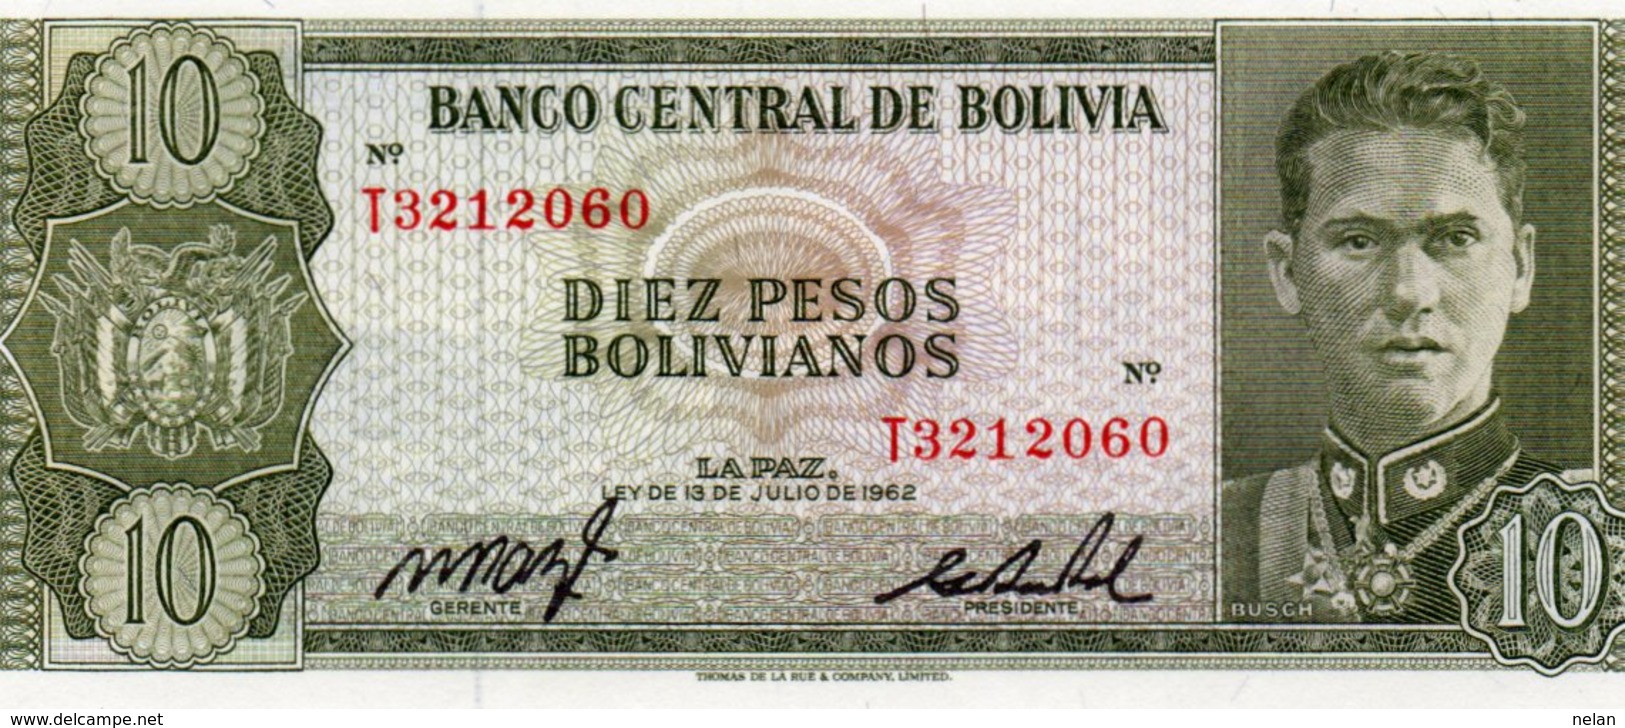 BOLIVIA 10 PESOS BOLIVIANOS 1962 - P-154a.17 Unc - Bolivien